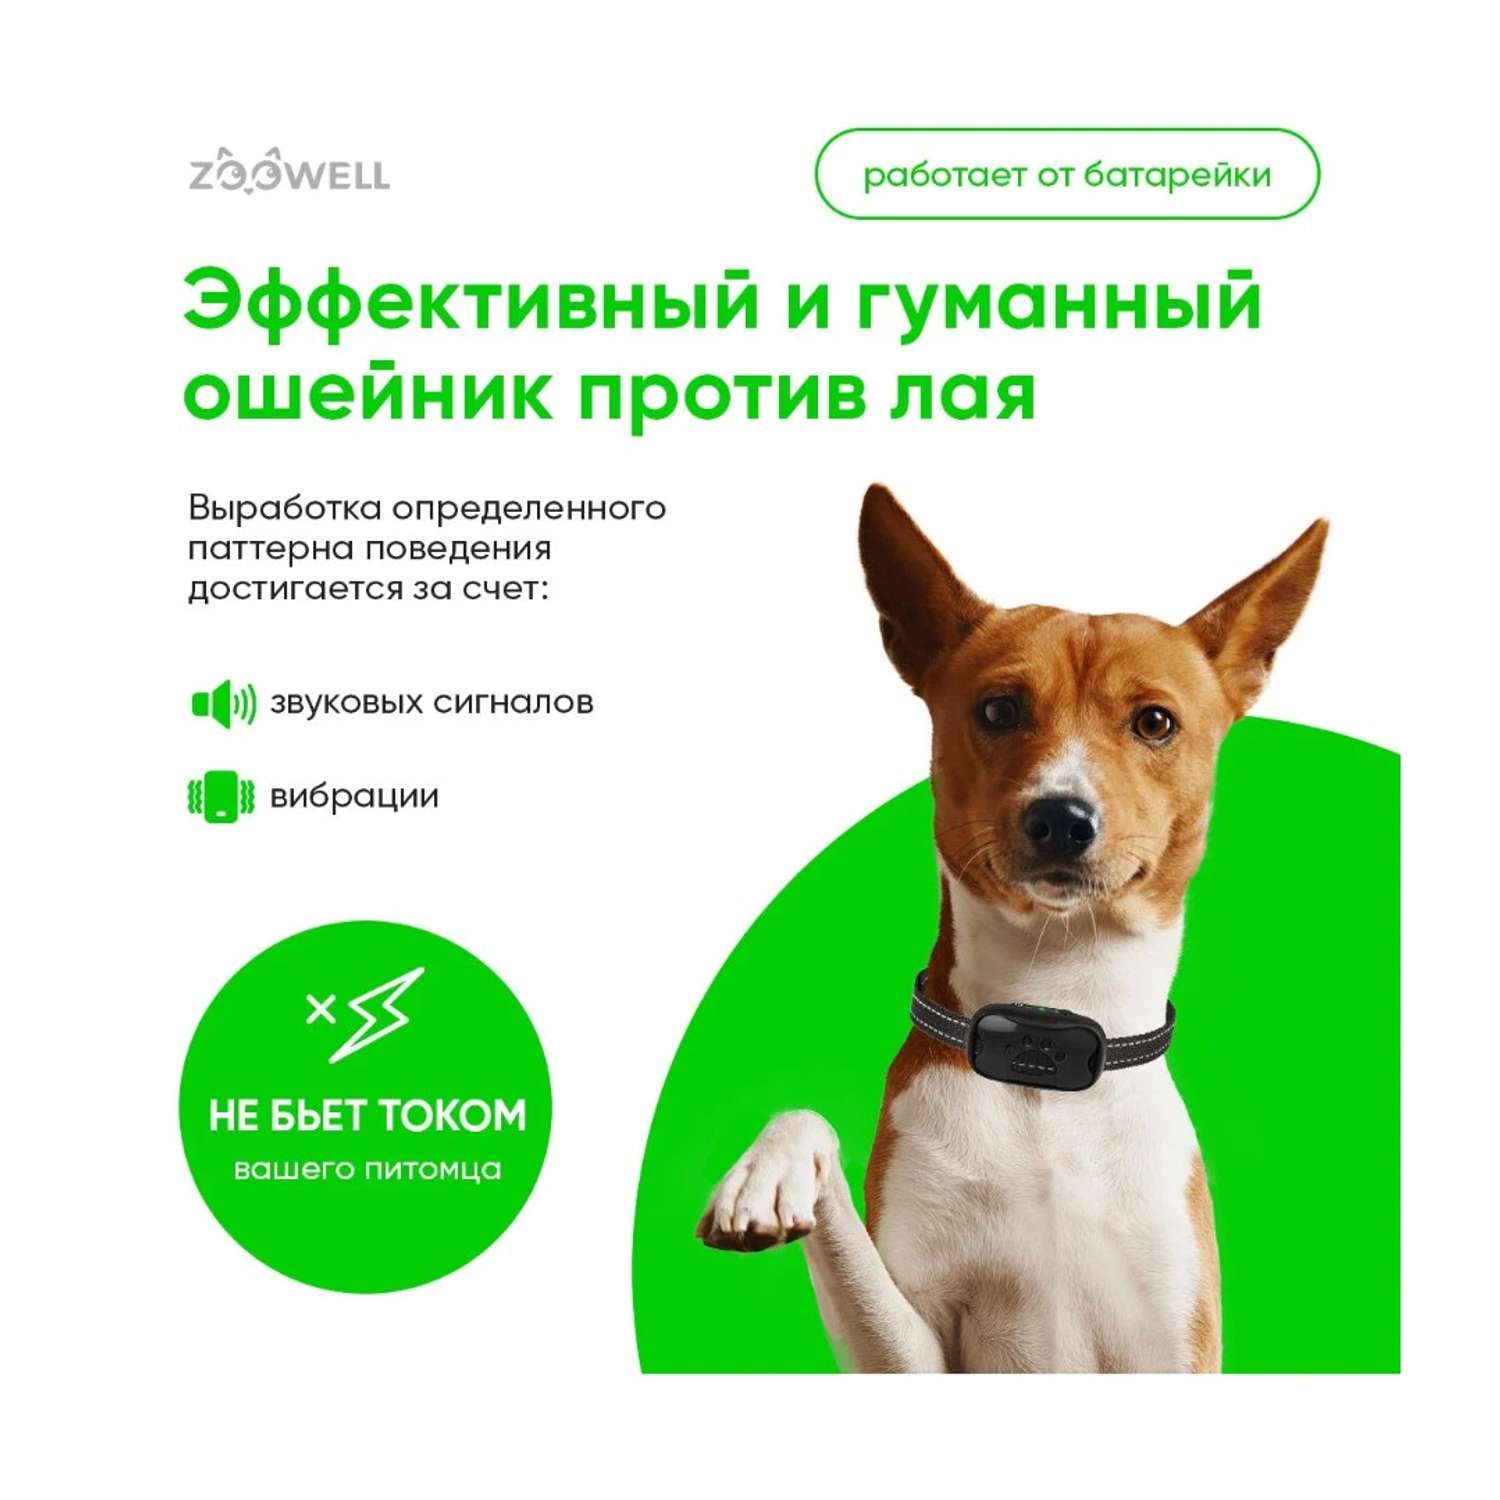 Ошейник ZDK для собак Антилай на батарейках лапа черный ZooWell купить по  цене 1319 ₽ с доставкой в Москве и России, отзывы, фото